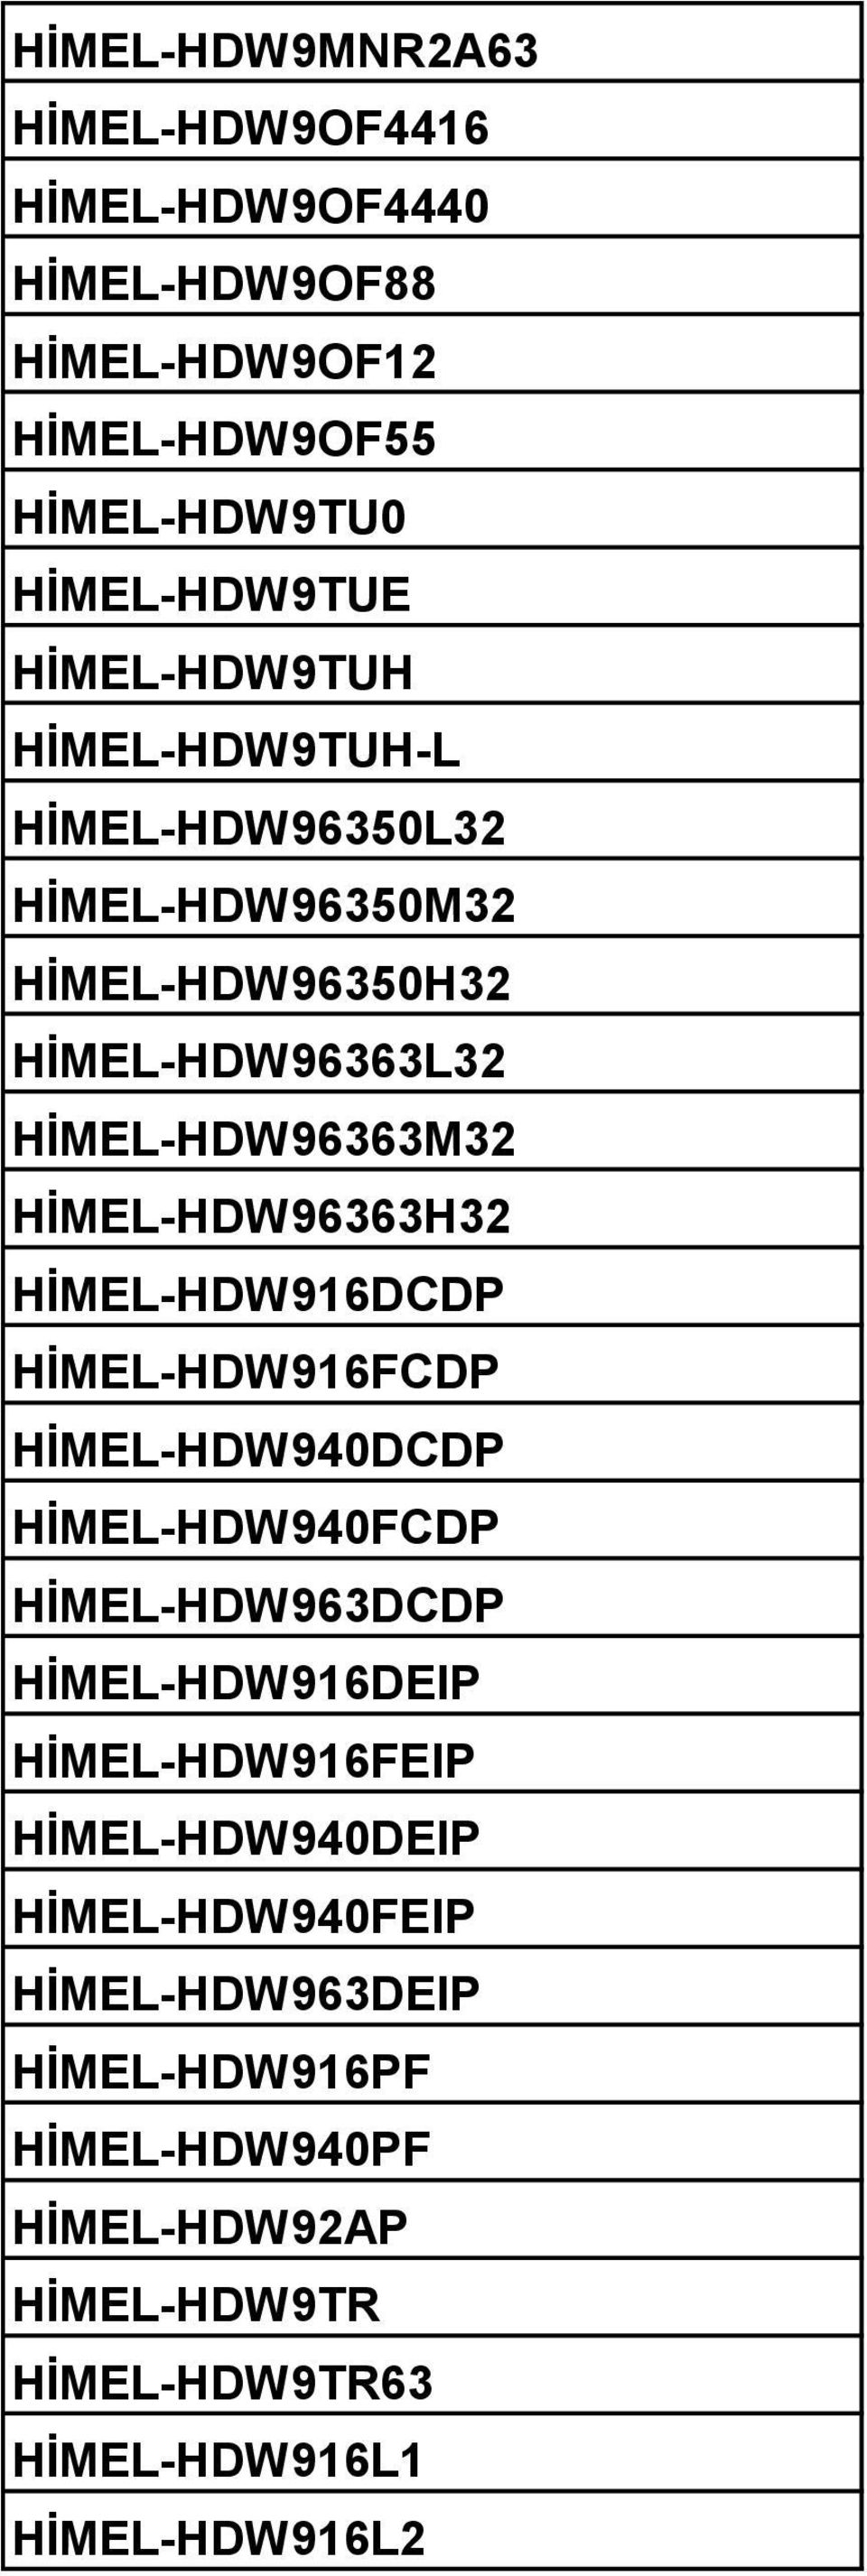 HİMEL-HDW96363H32 HİMEL-HDW916DCDP HİMEL-HDW916FCDP HİMEL-HDW940DCDP HİMEL-HDW940FCDP HİMEL-HDW963DCDP HİMEL-HDW916DEIP